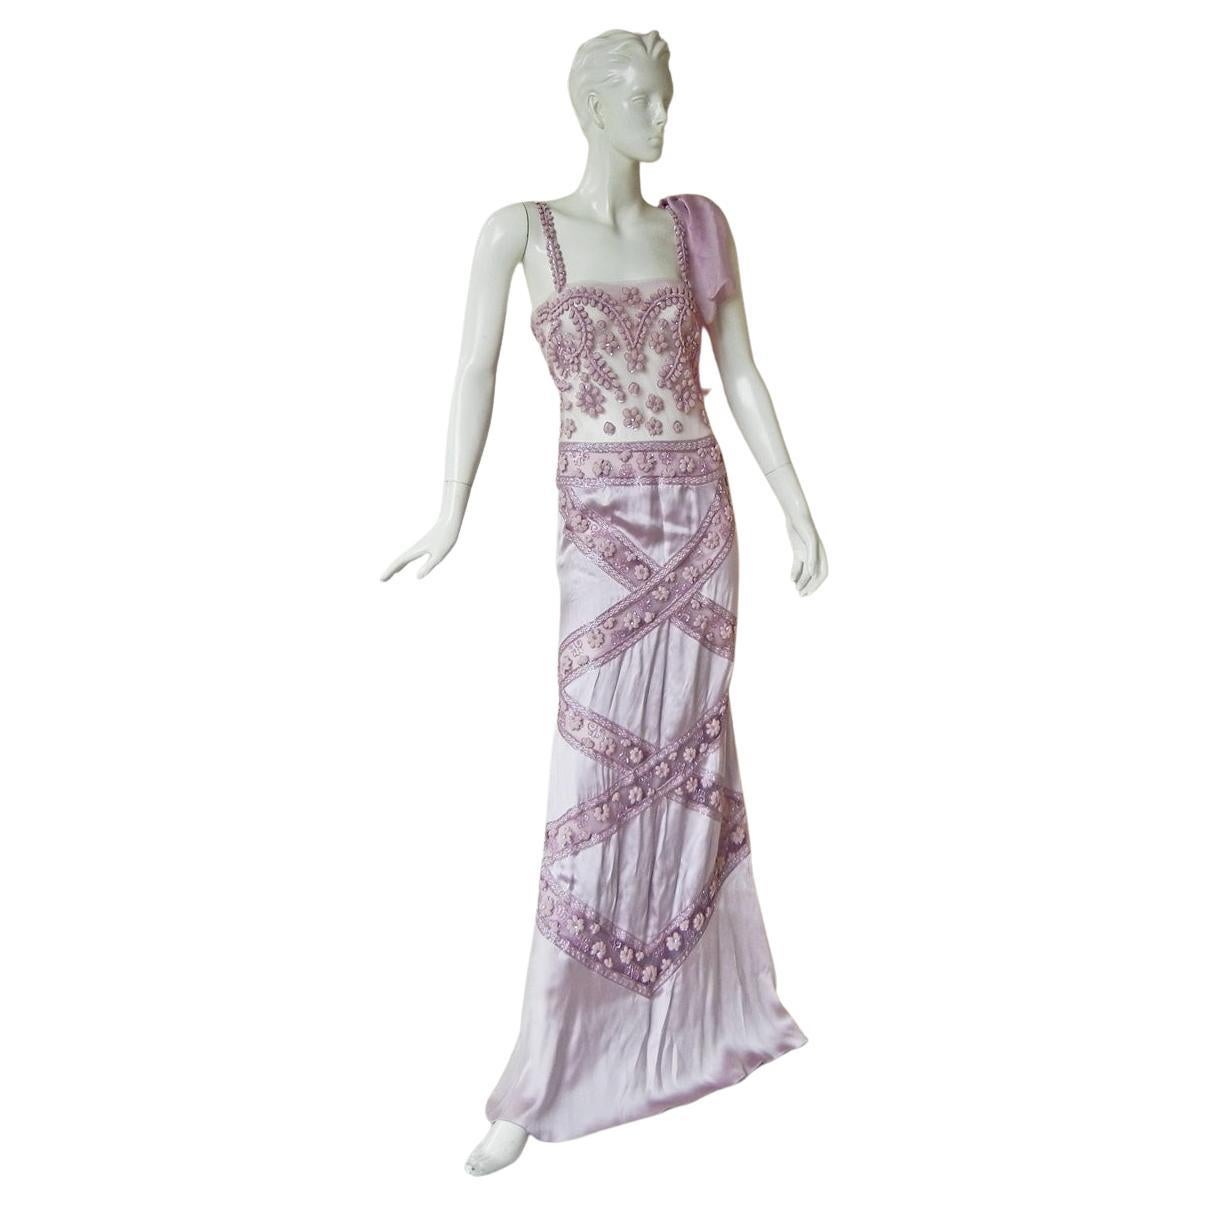 Authentic NWOT Louis Vuitton Vintage Flower Zip Up Dress Size 38 $3200